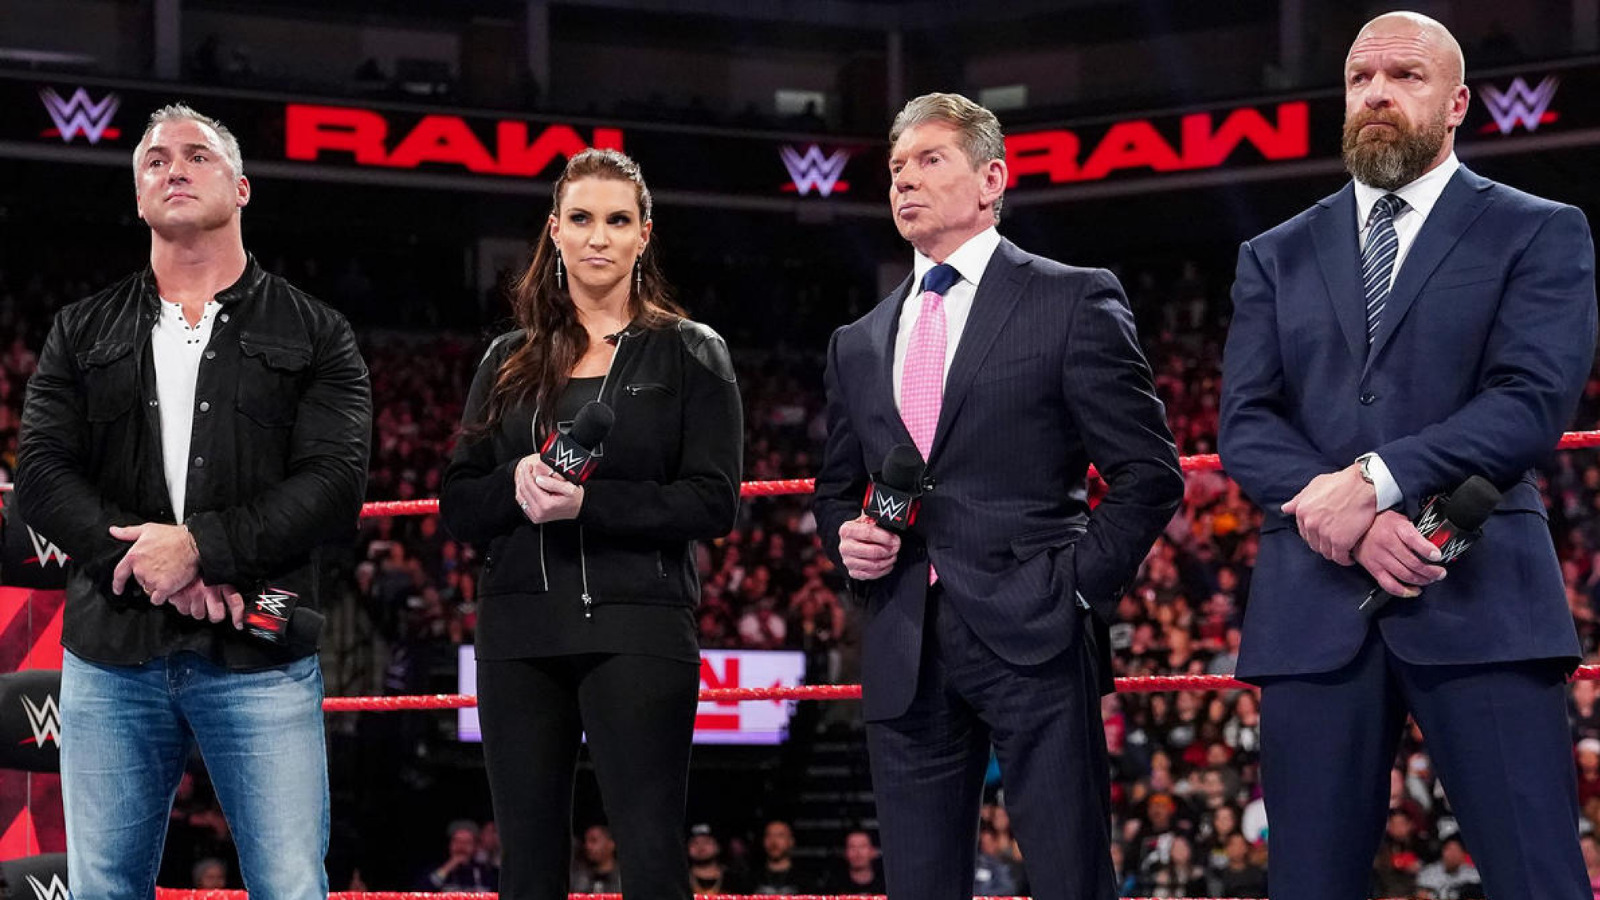 El miembro del Salón de la Fama de la WWE Kevin Nash expresa su simpatía por Triple H y la familia McMahon